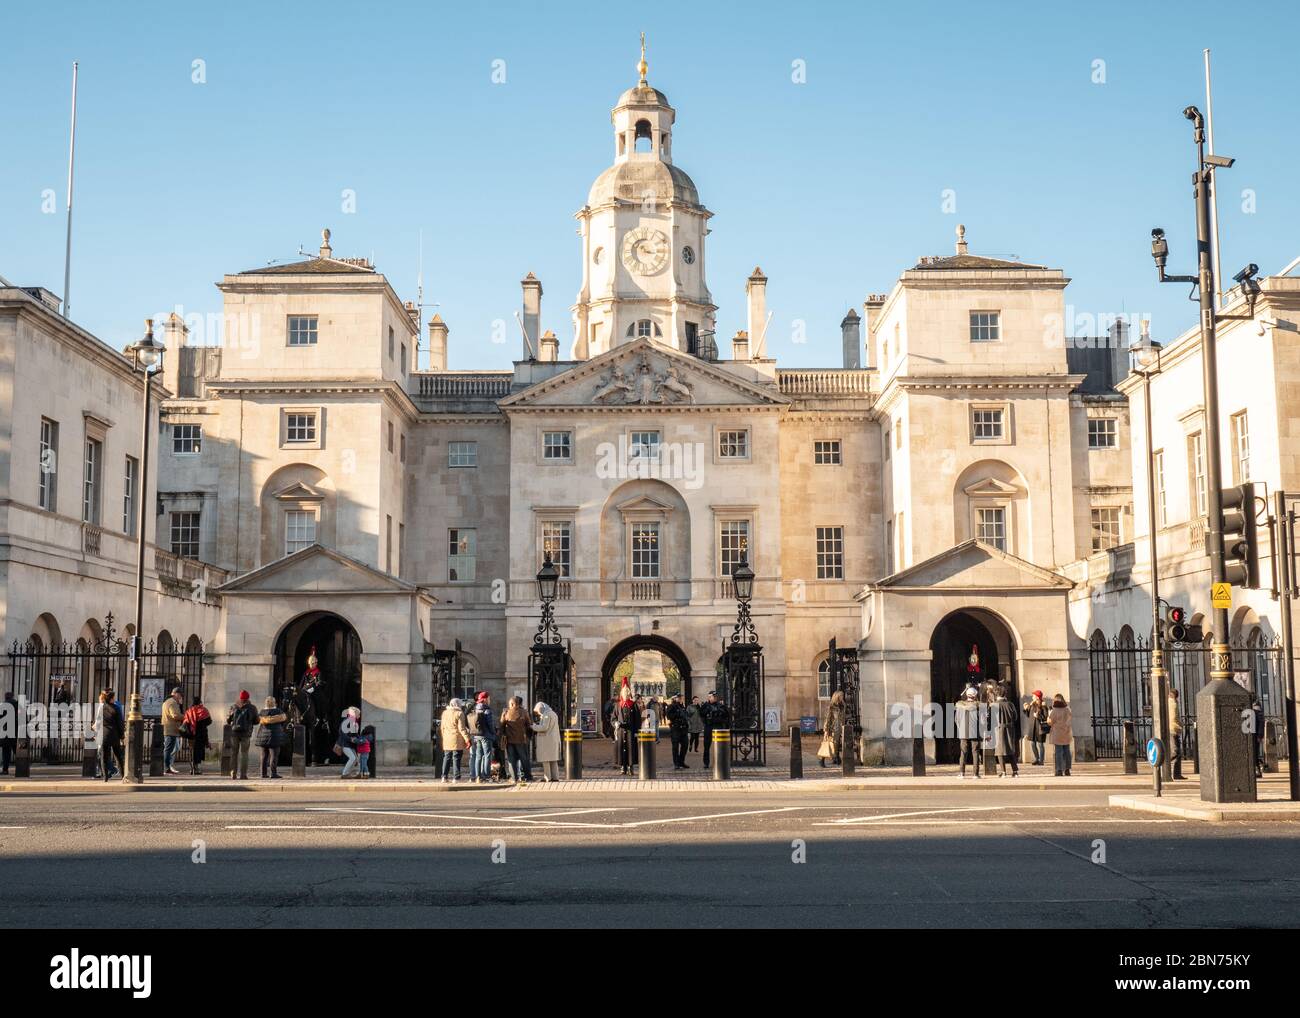 Horse Guards, Londra, Regno Unito. L'ingresso della Whitehall alle Guardie a Cavallo, un antico monumento militare con turisti che ammirano le sue guardie cerimoniali a cavallo. Foto Stock